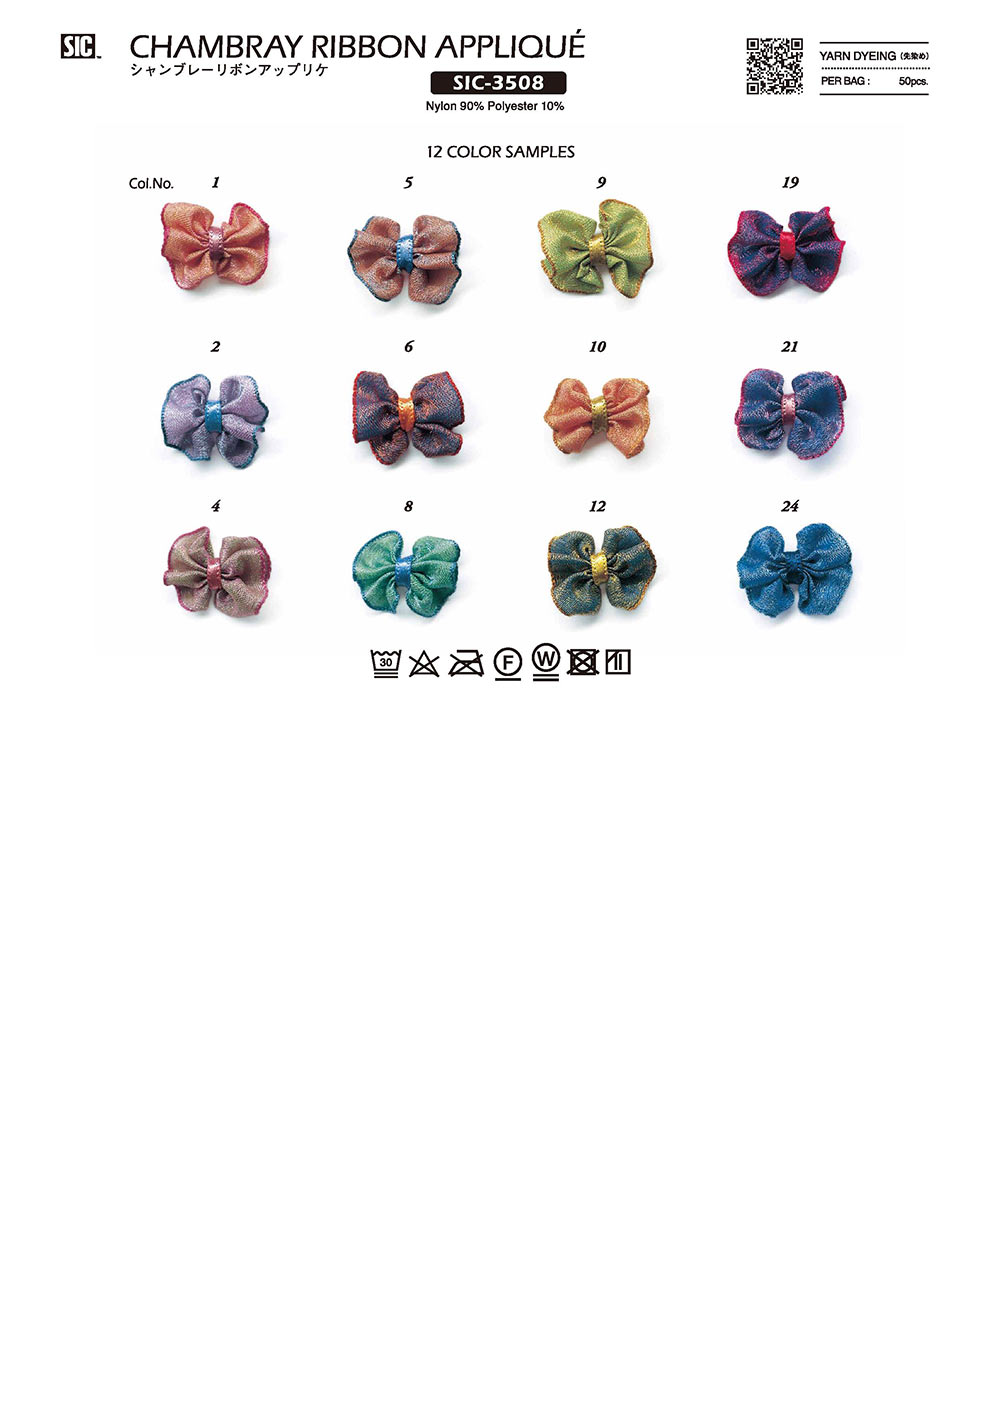 SIC-3508 Vải Chambray Ruy Băng đính đá[Hàng Hóa Khác Và Những Thứ Khác] SHINDO(SIC)